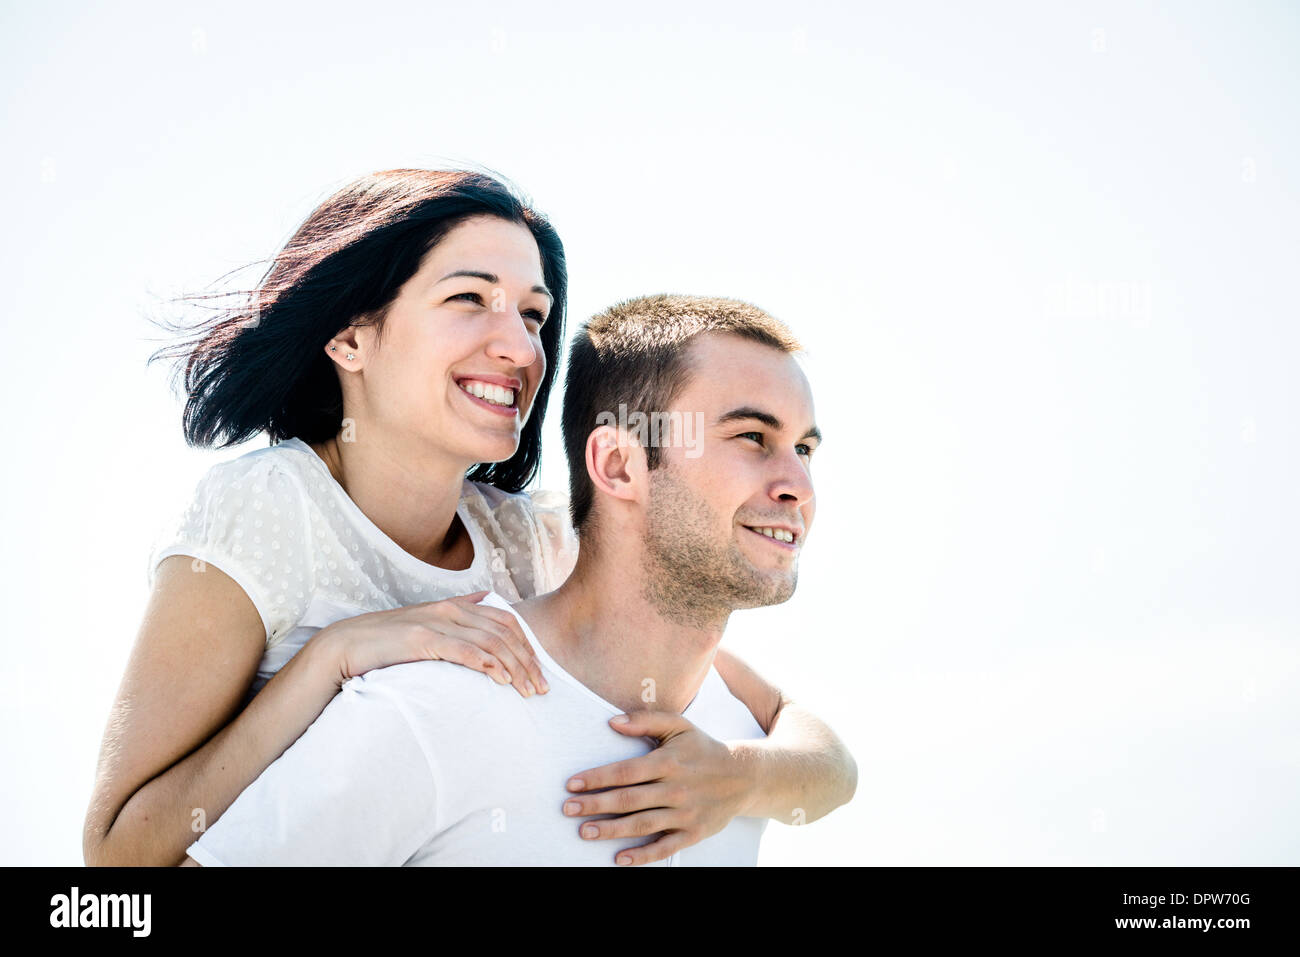 Junges Paar auf helle Zukunft - glückliche Frau umarmt ihre Liebe um Hals Stockfoto